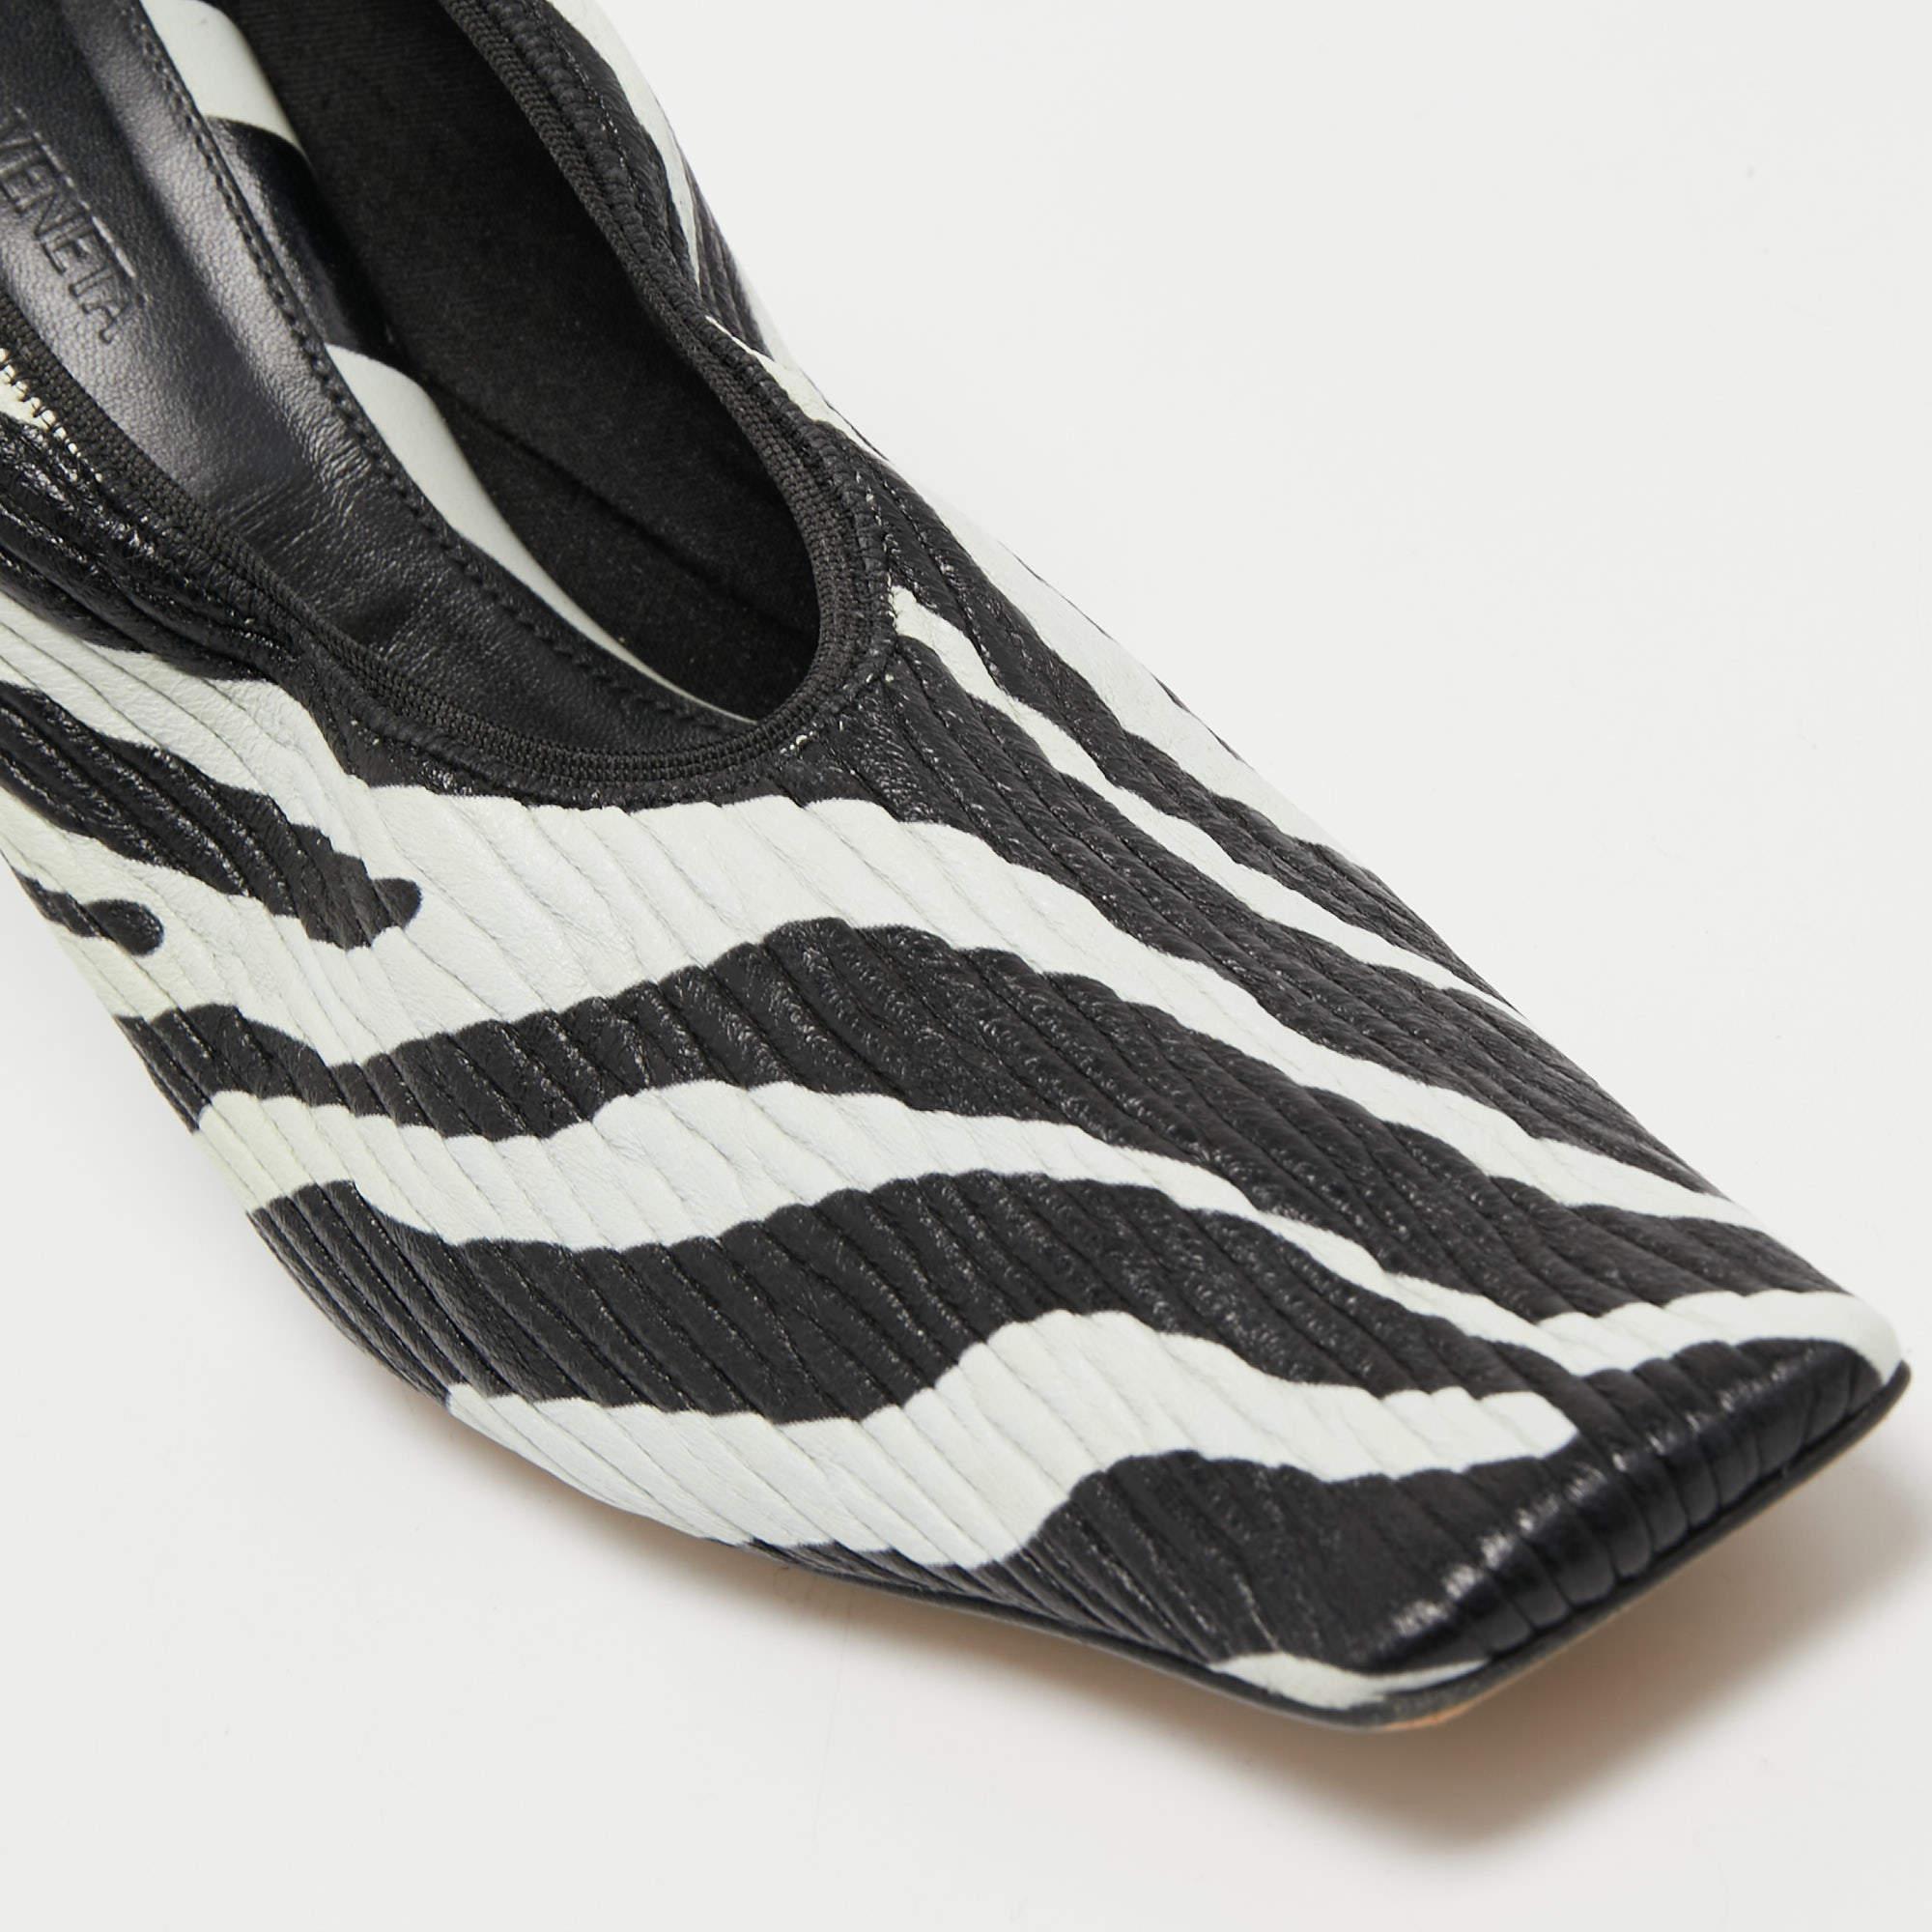 Bottega Veneta Black/White Zebra Print Leather Pumps Size 39 3